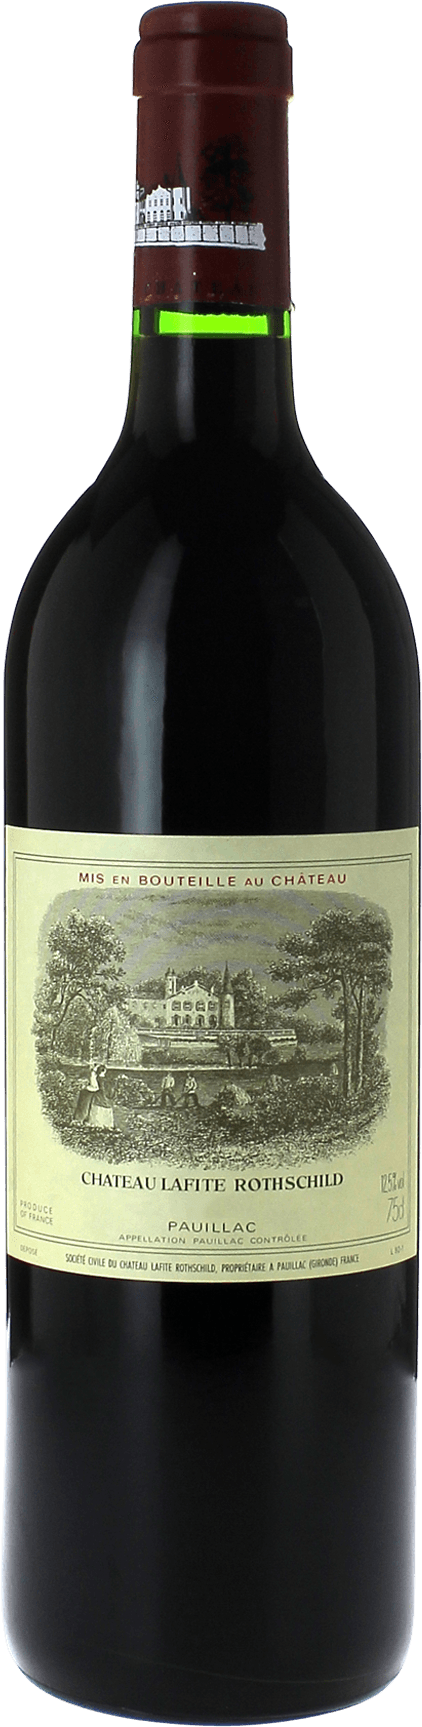 Lafite rothschild pauillac 1986 1er Grand cru class Pauillac, Bordeaux rouge